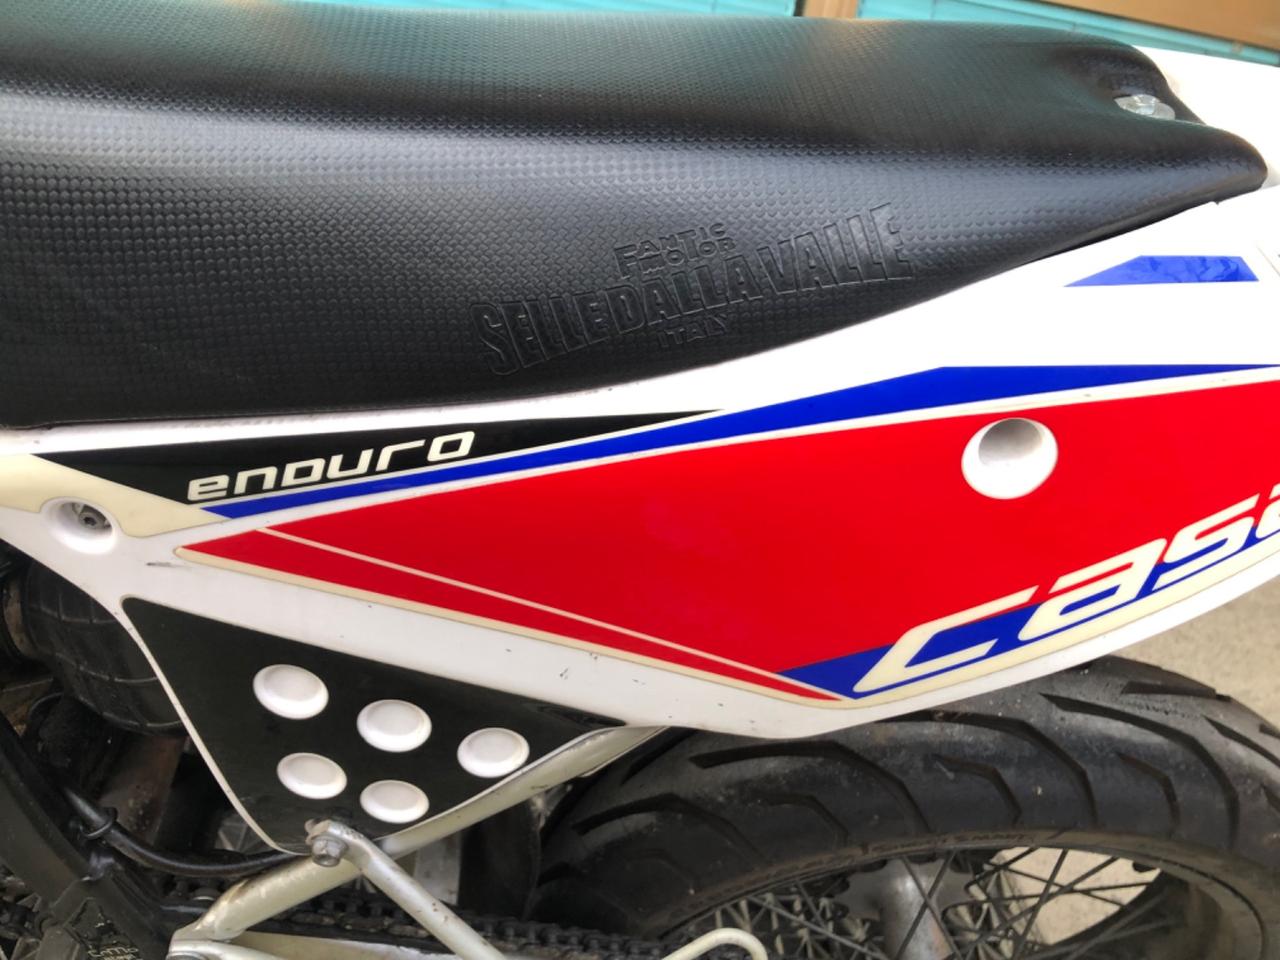 Fantic Enduro 50cc